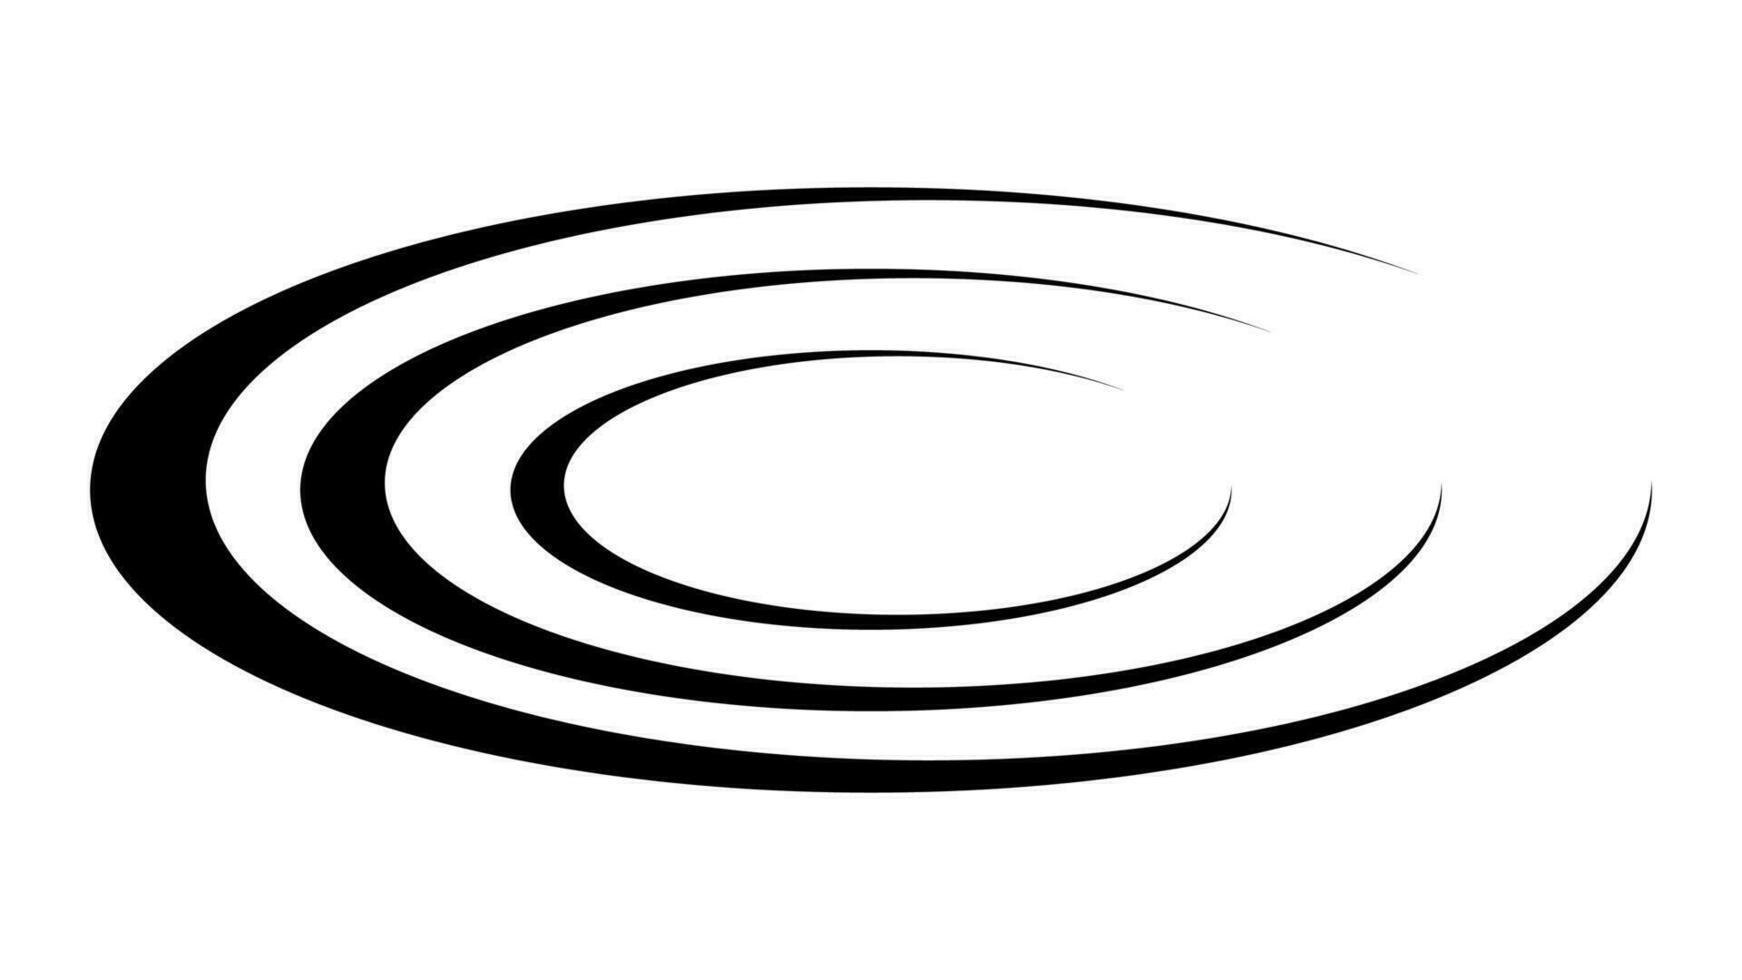 Kreise auf Wasser, Vermehrung kreisförmig Radio Klang Wellen im Raum vektor